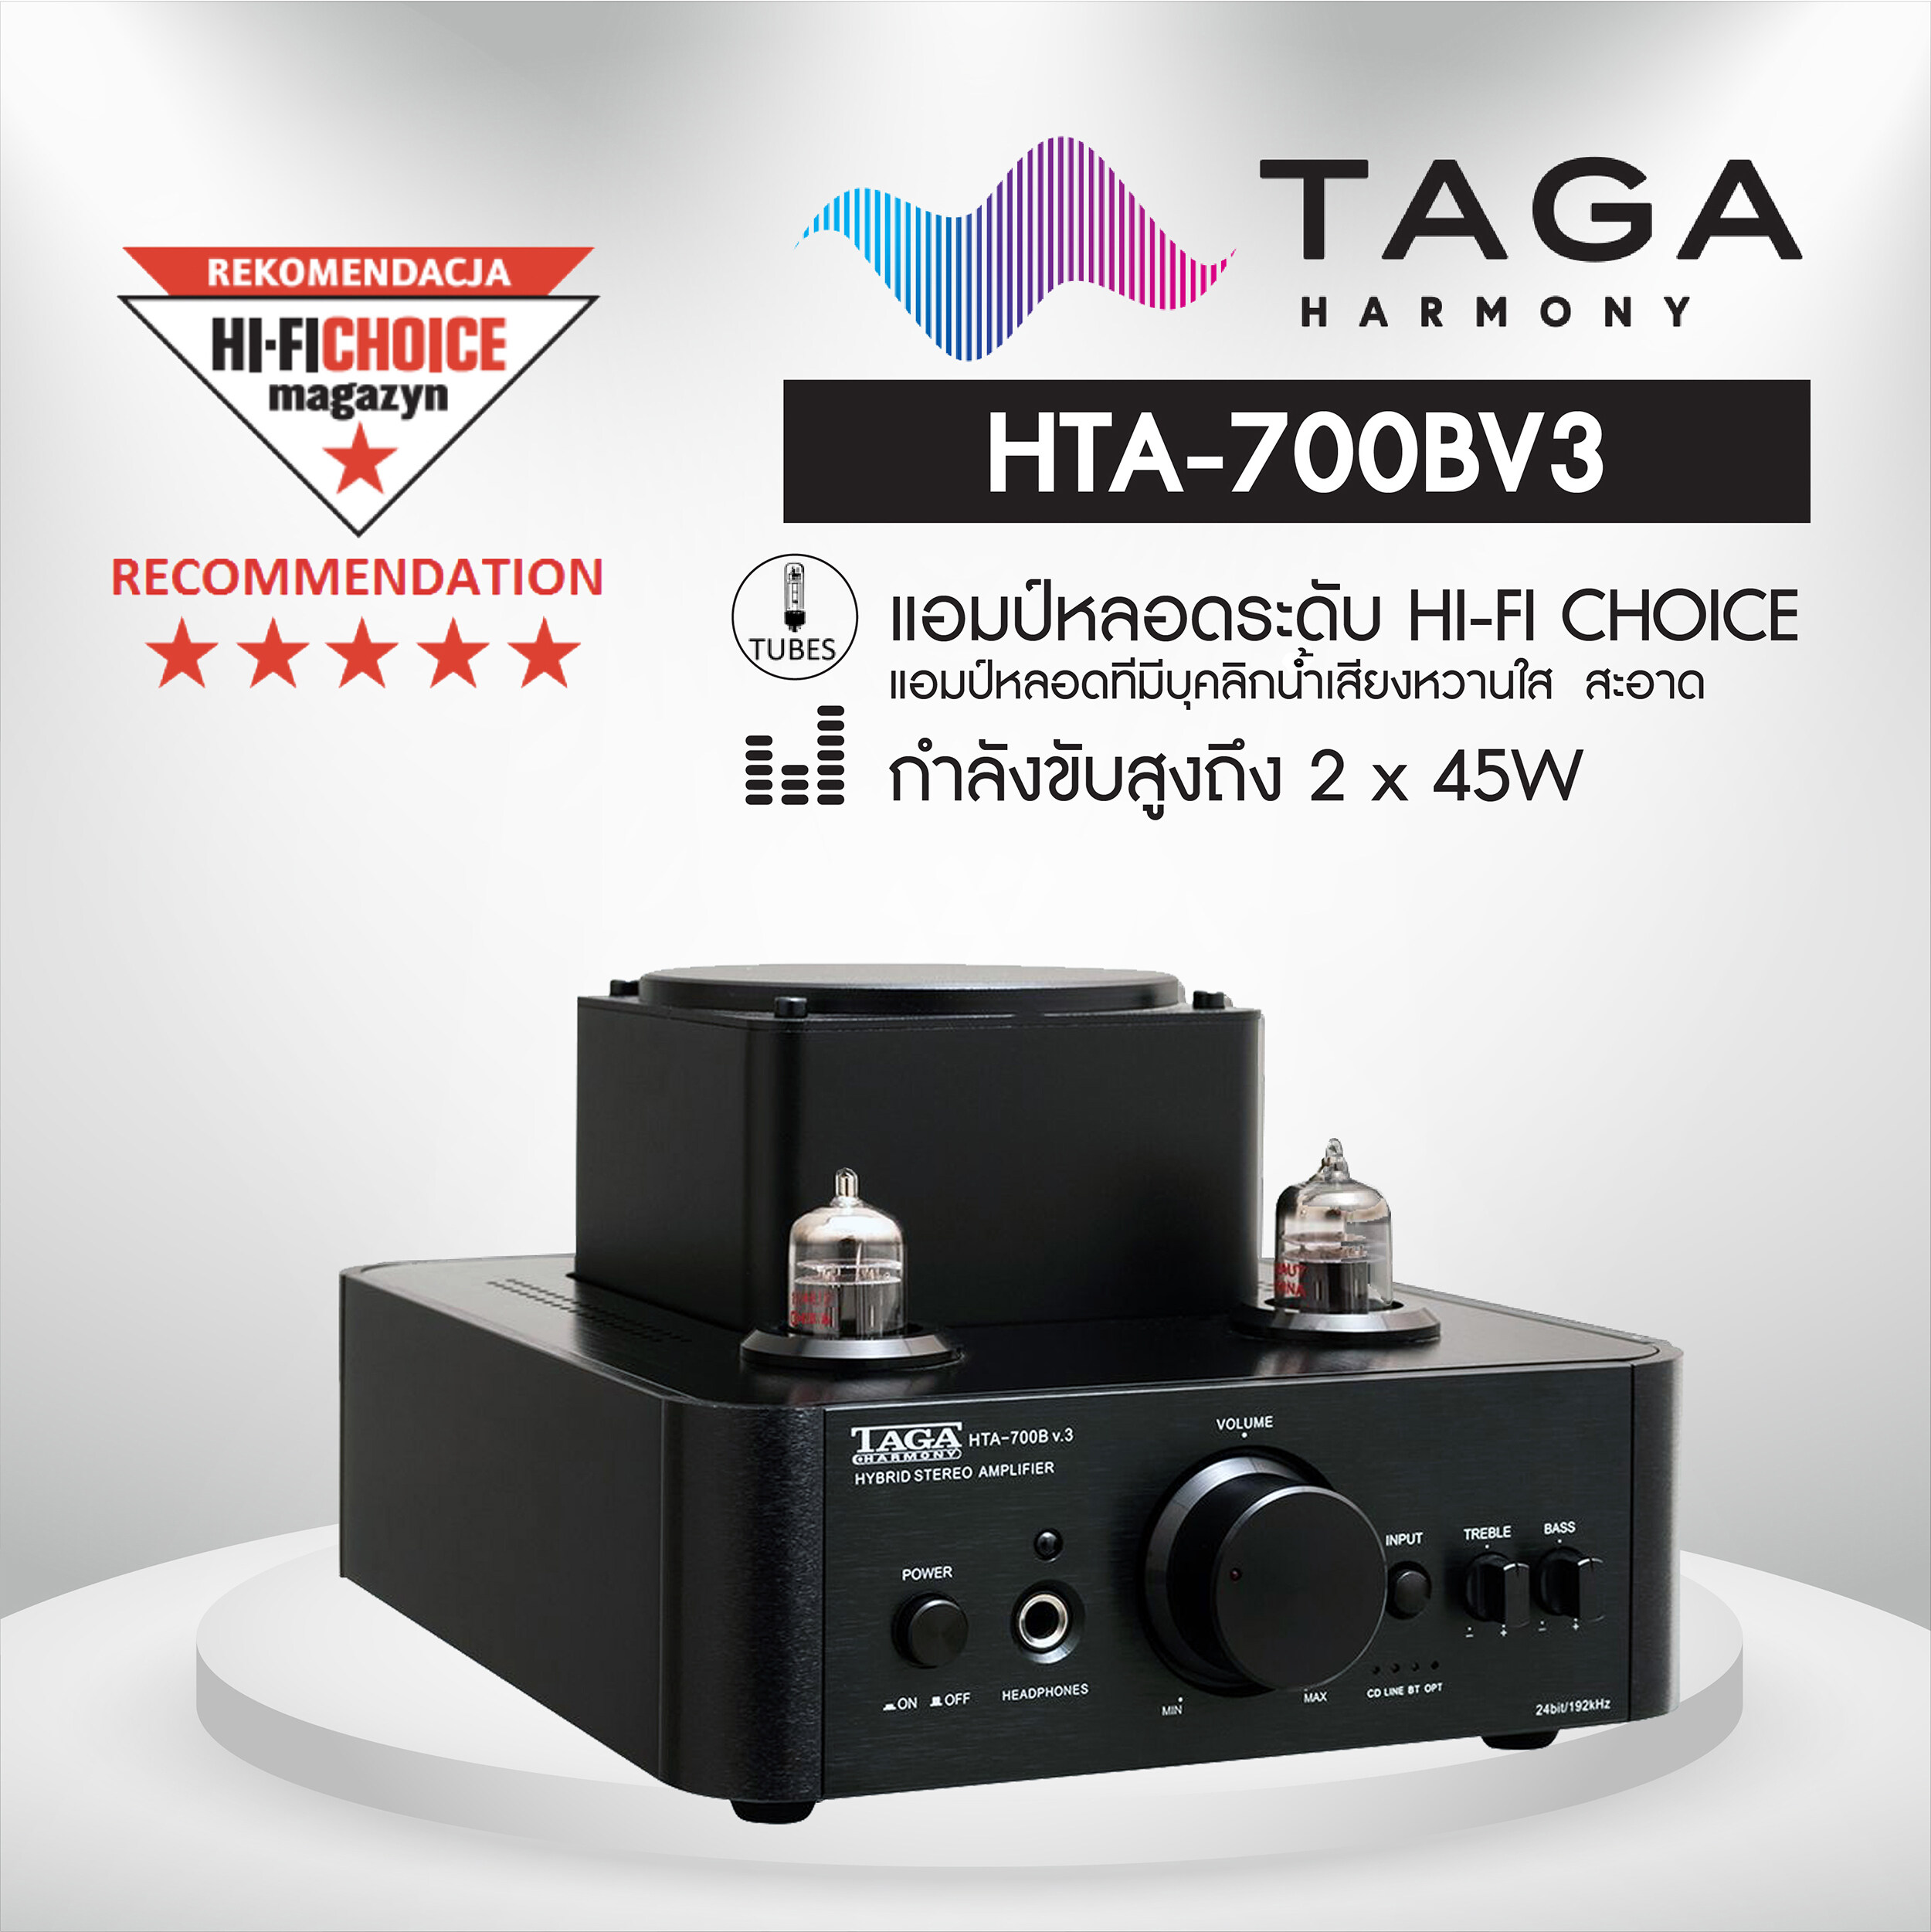 แอมป์หลอด TAGA HARMONY HTA-700BV3 กำลังขับสูง 2x45W Bluetooth เล่นเพลงจากมือถือได้ทันที น้ำเสียงหวานใสได้รับรางวัลมากมายจากยุโรป ต่อหูฟังได้พร้อมรีโมท